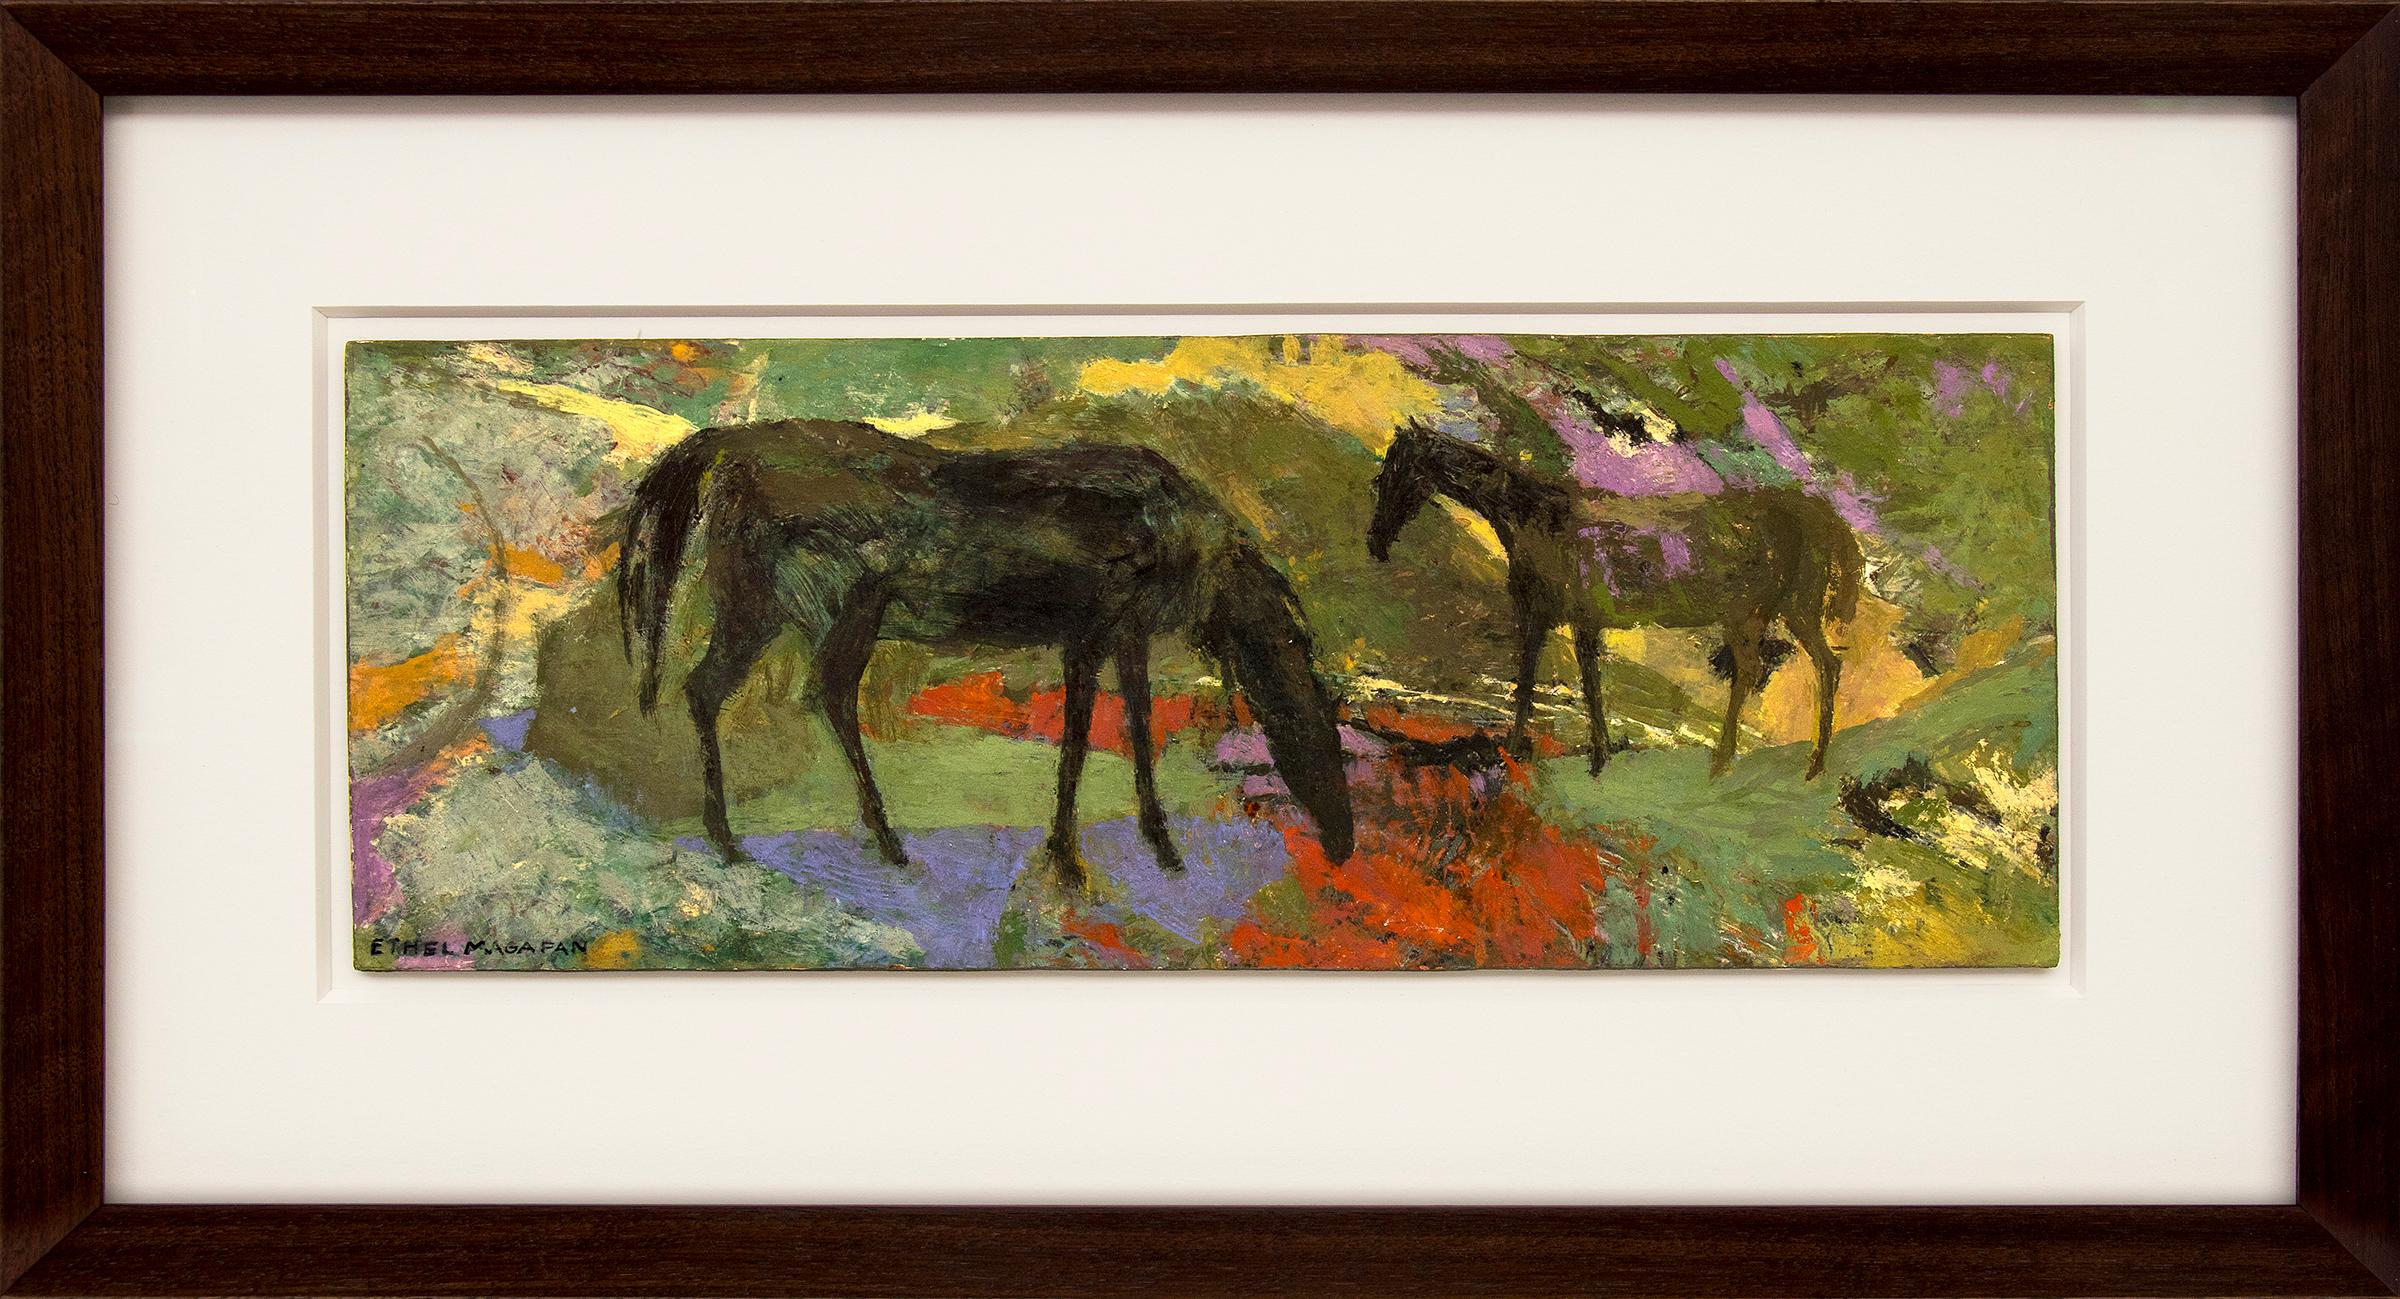 Abstract Painting Ethel Magafan - Deux chevaux, peinture semi-abstraite de Tempera encadrée, paysage de chevaux figuratifs